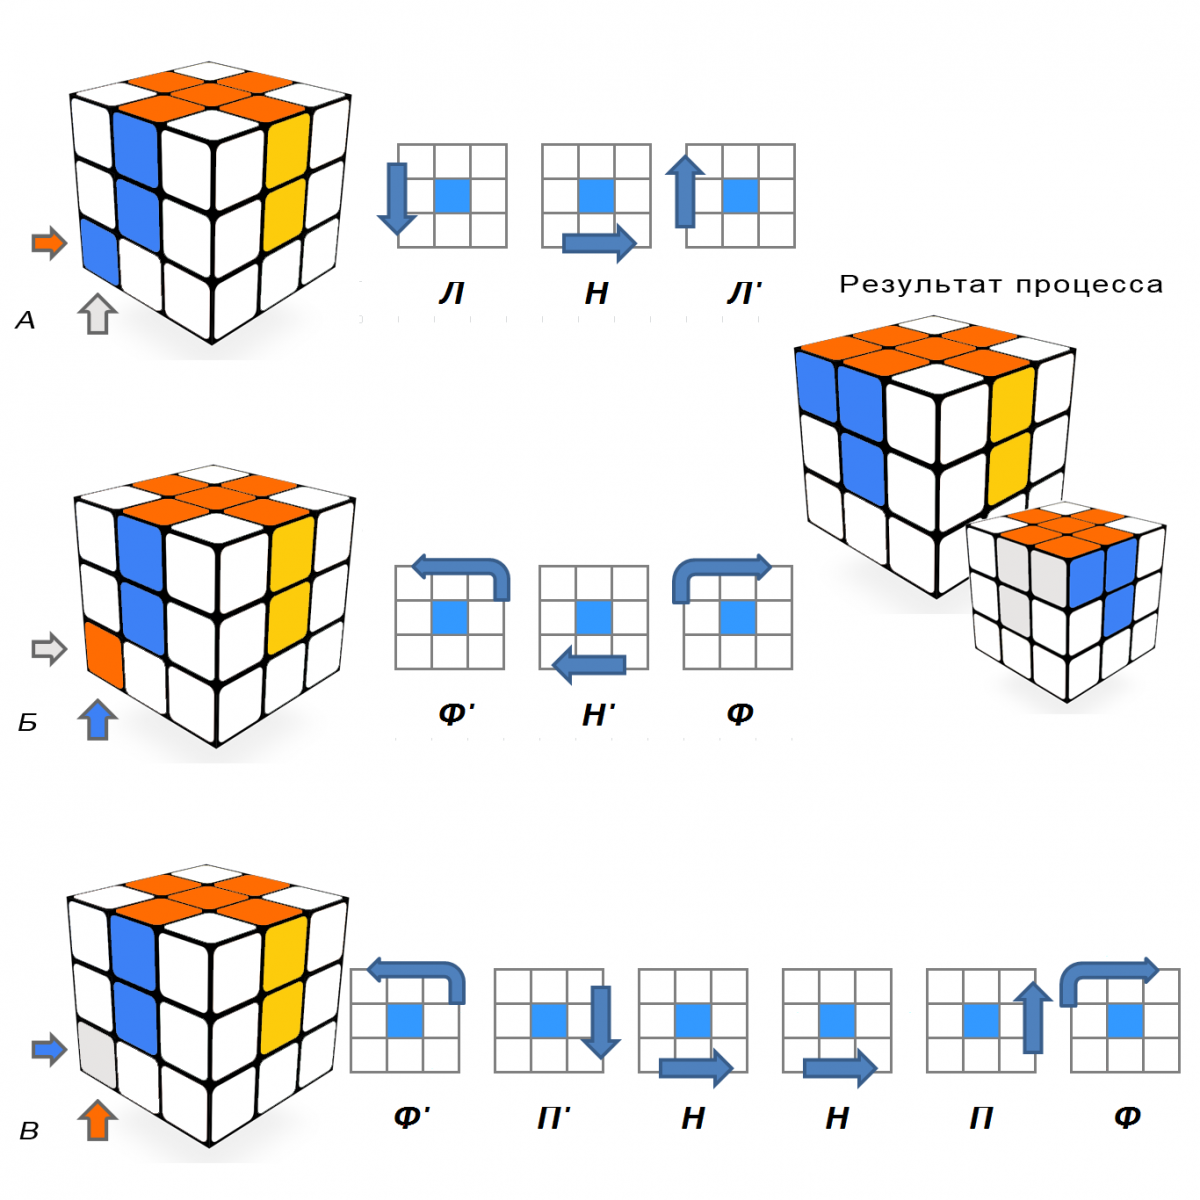 Алгоритм кубика Рубика 3х3. Схема сборки кубика Рубика 3х3. Сборка третьего слоя кубика Рубика 3х3. Как собрать кубик Рубика 3 на 3 схема. На покраску 1 кубика со всех сторон